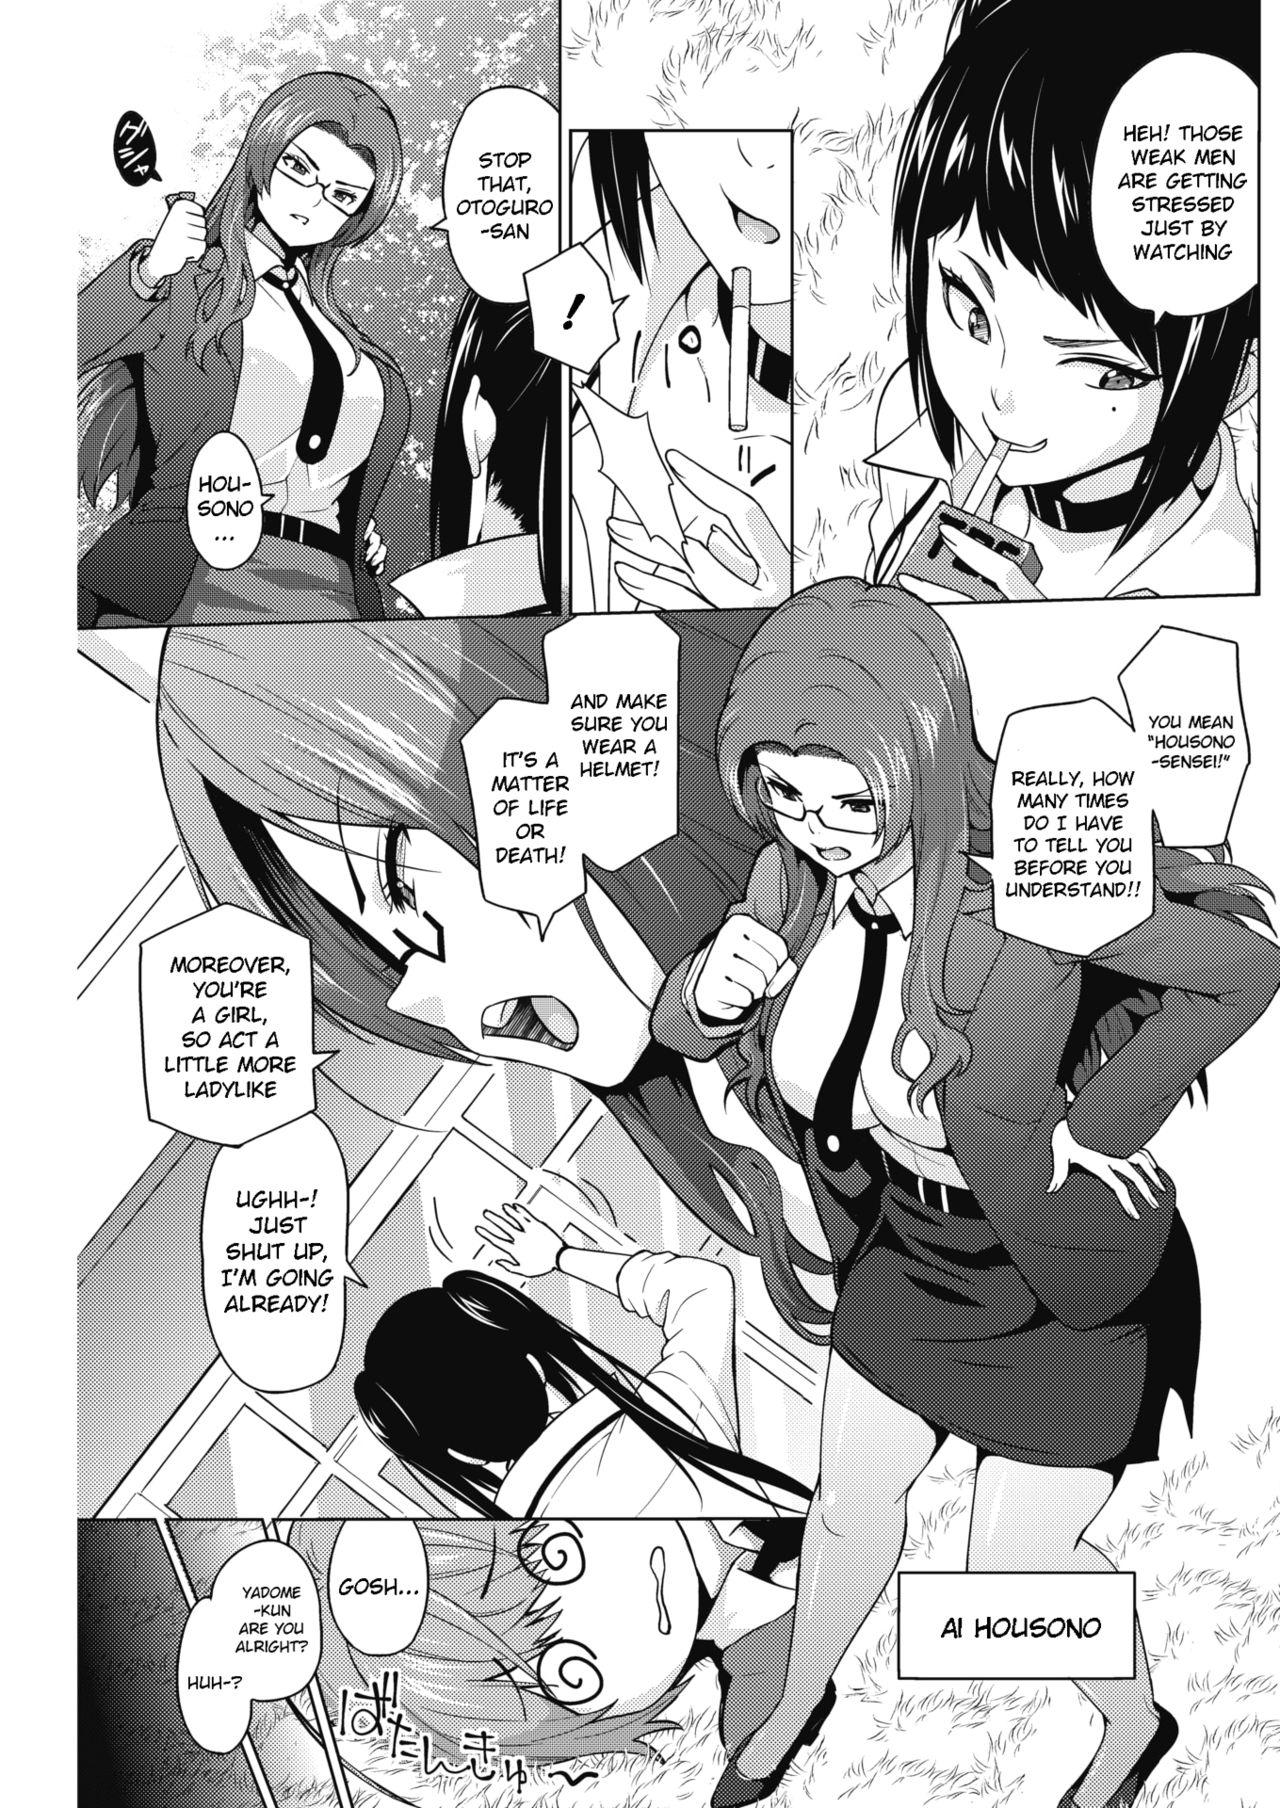 Cavala Otoguro Miya no Oasobi #1 Mms - Page 3